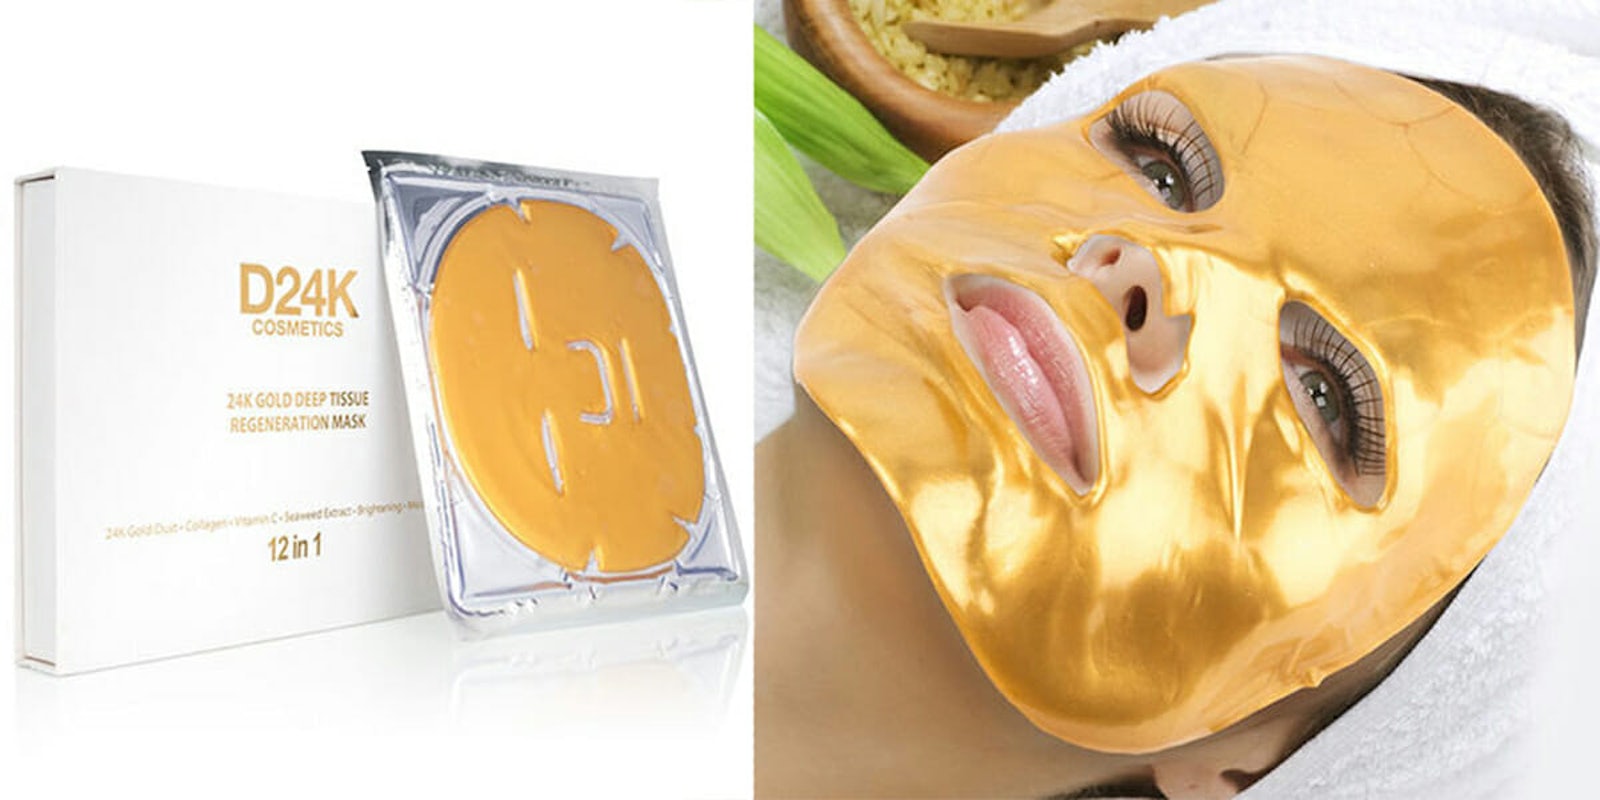 24k gold face mask